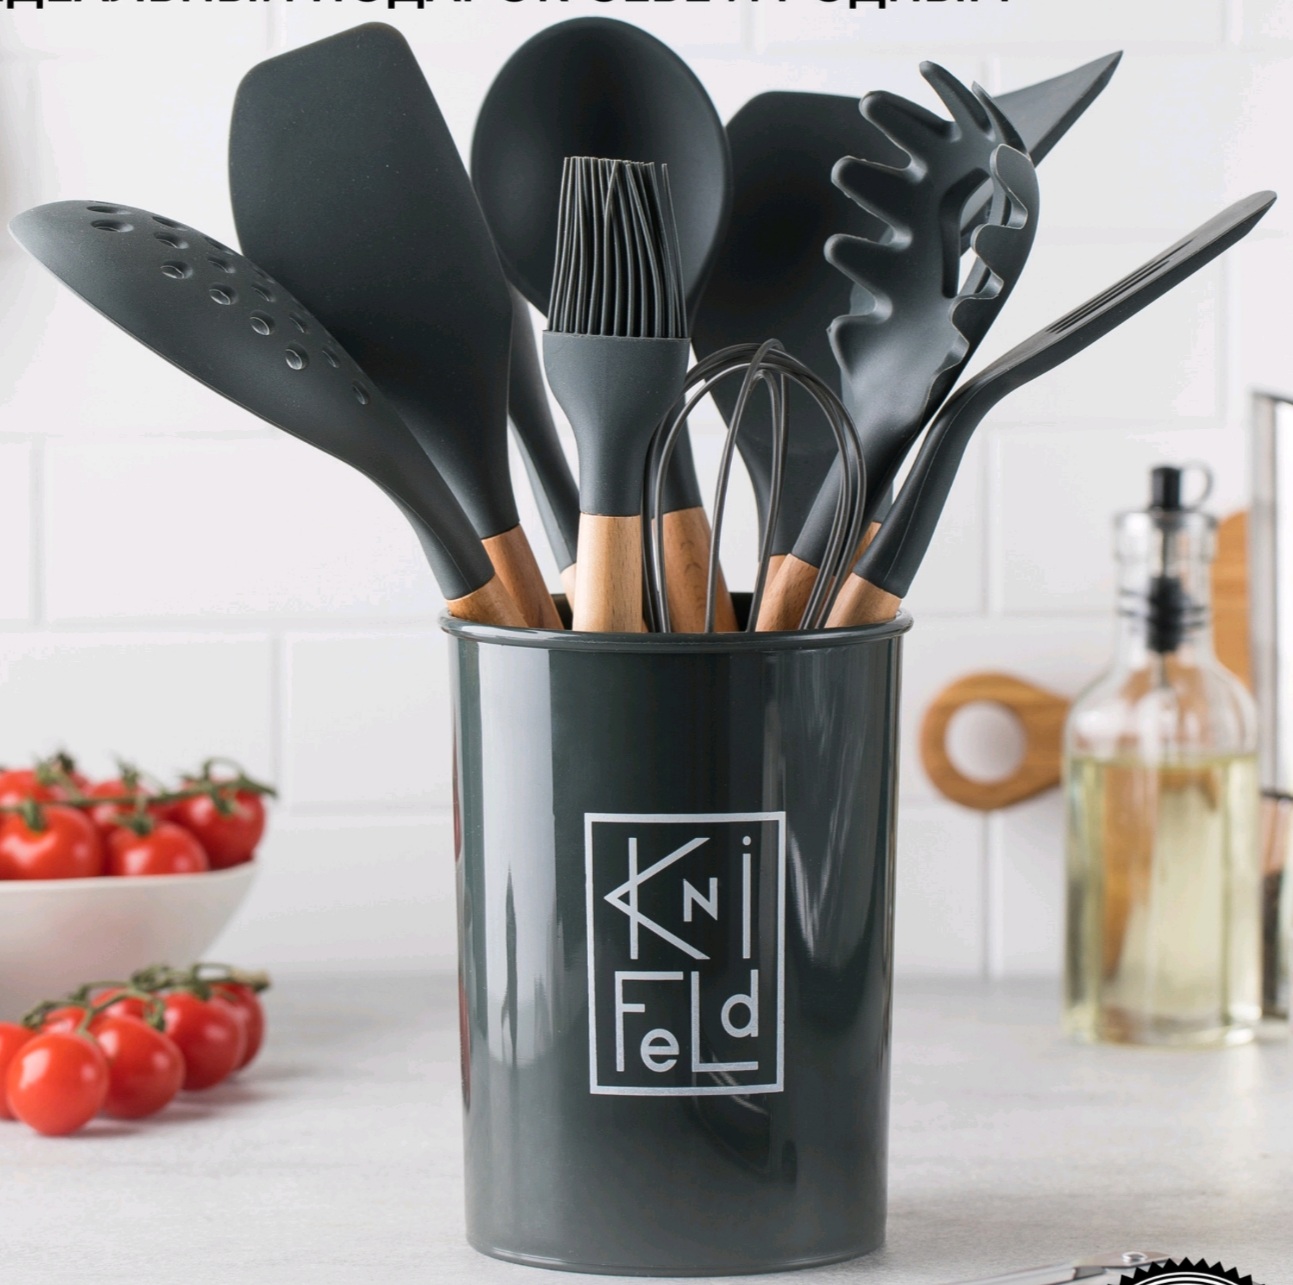 Набор кухонных принадлежностей Knifeld 12 предметов | отзывы